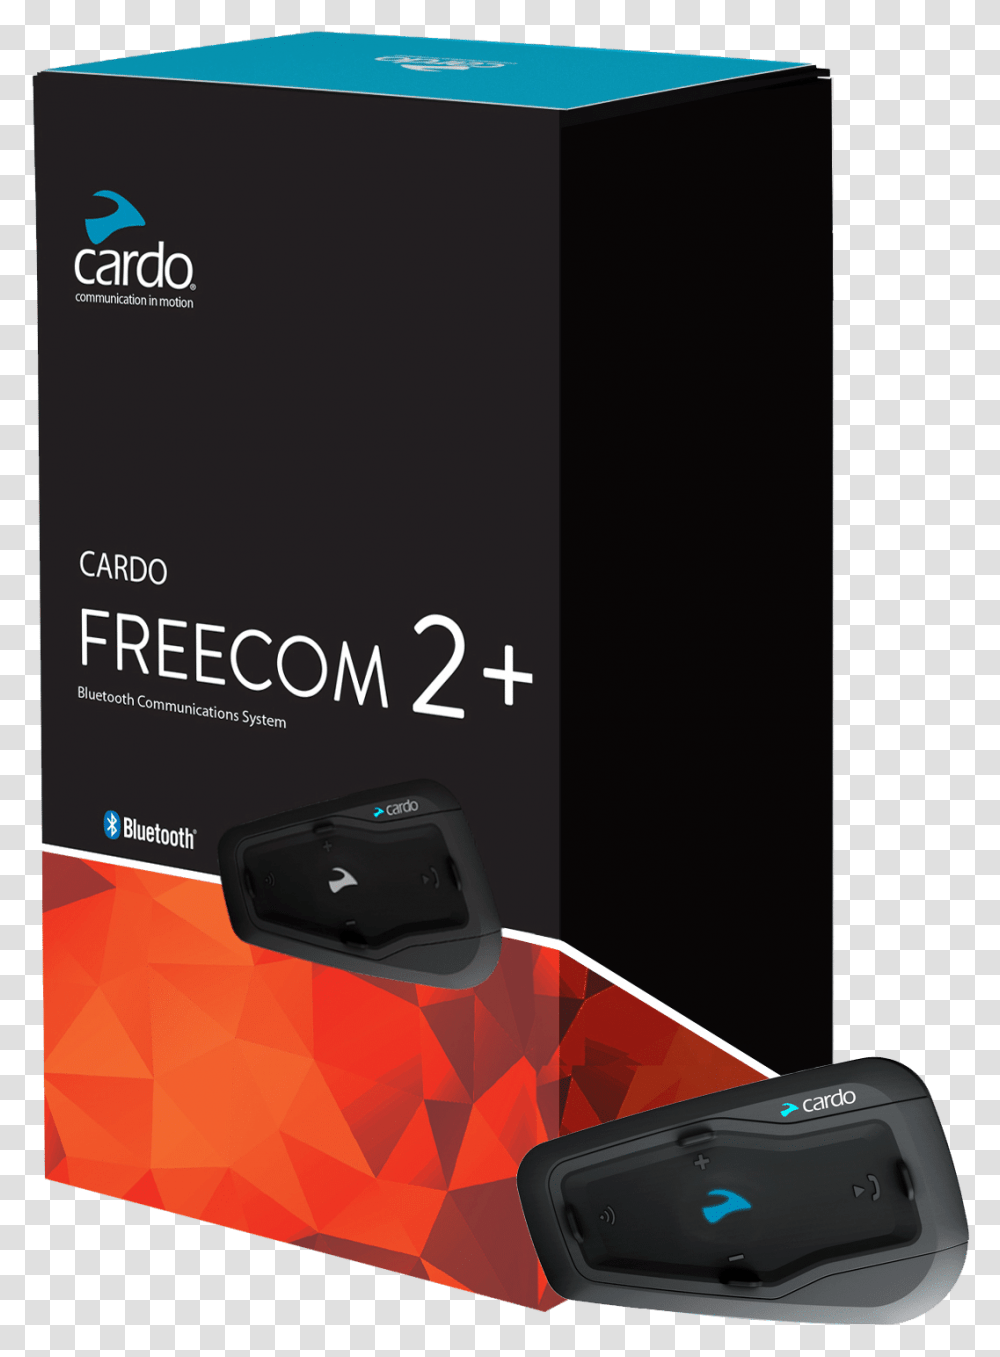 Freecom 2 Plus 2way Intercom Communication System Cardo Cardo Freecom Duo, Electronics, Mouse, Hardware, Computer Transparent Png